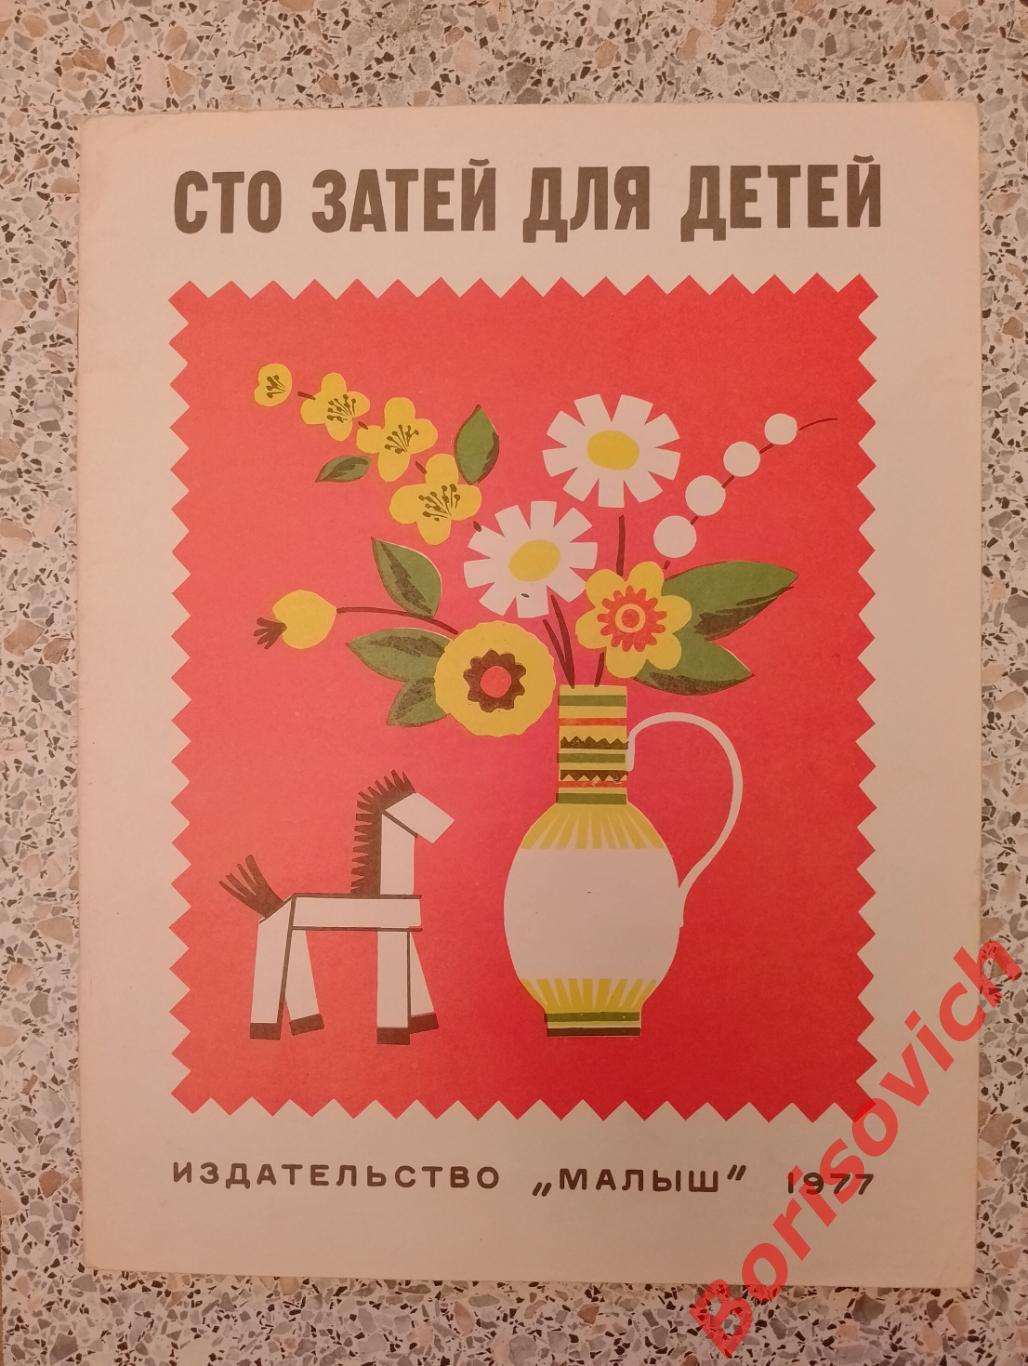 СТО ЗАТЕЙ ДЛЯ ДЕТЕЙ Издательство Малыш 1977 г